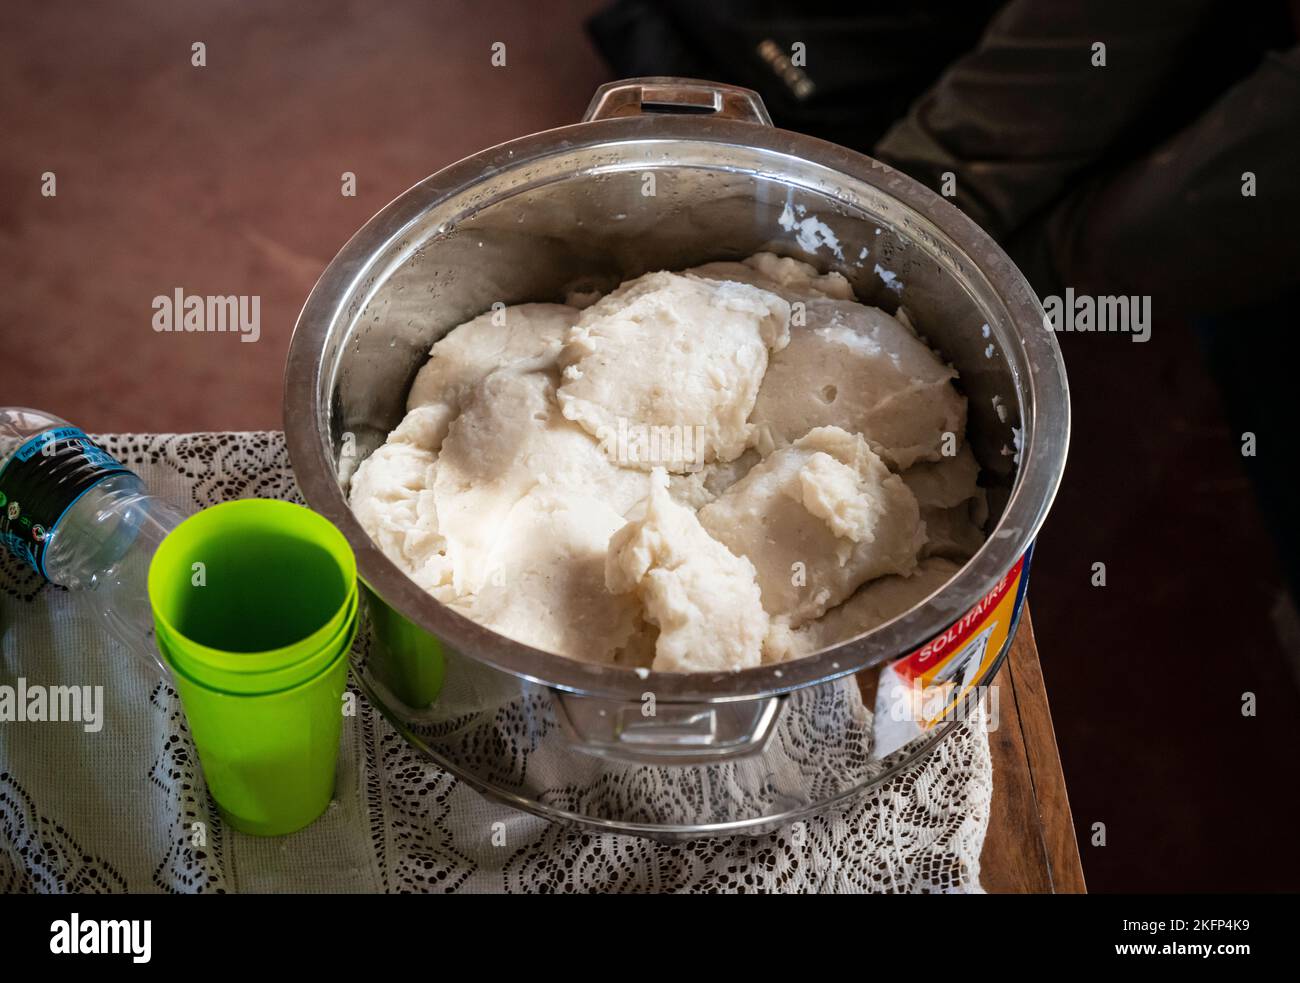 Un bol de nsima fraîchement préparé (porridge de maïs) - cuisine traditionnelle malawienne Banque D'Images